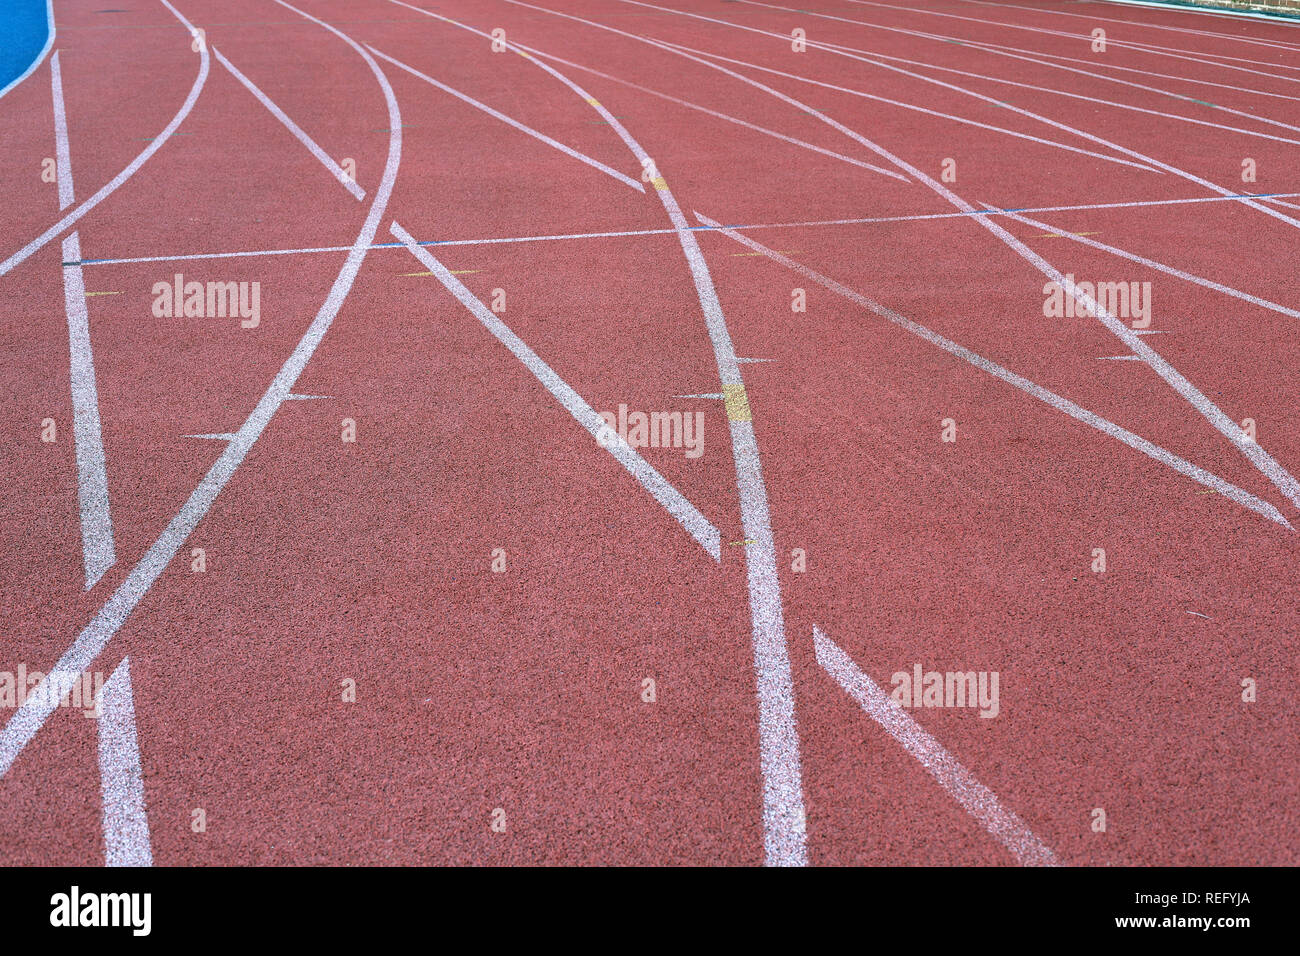 Leichtathletik Rennstrecke sich schneidende Linien Stockfoto